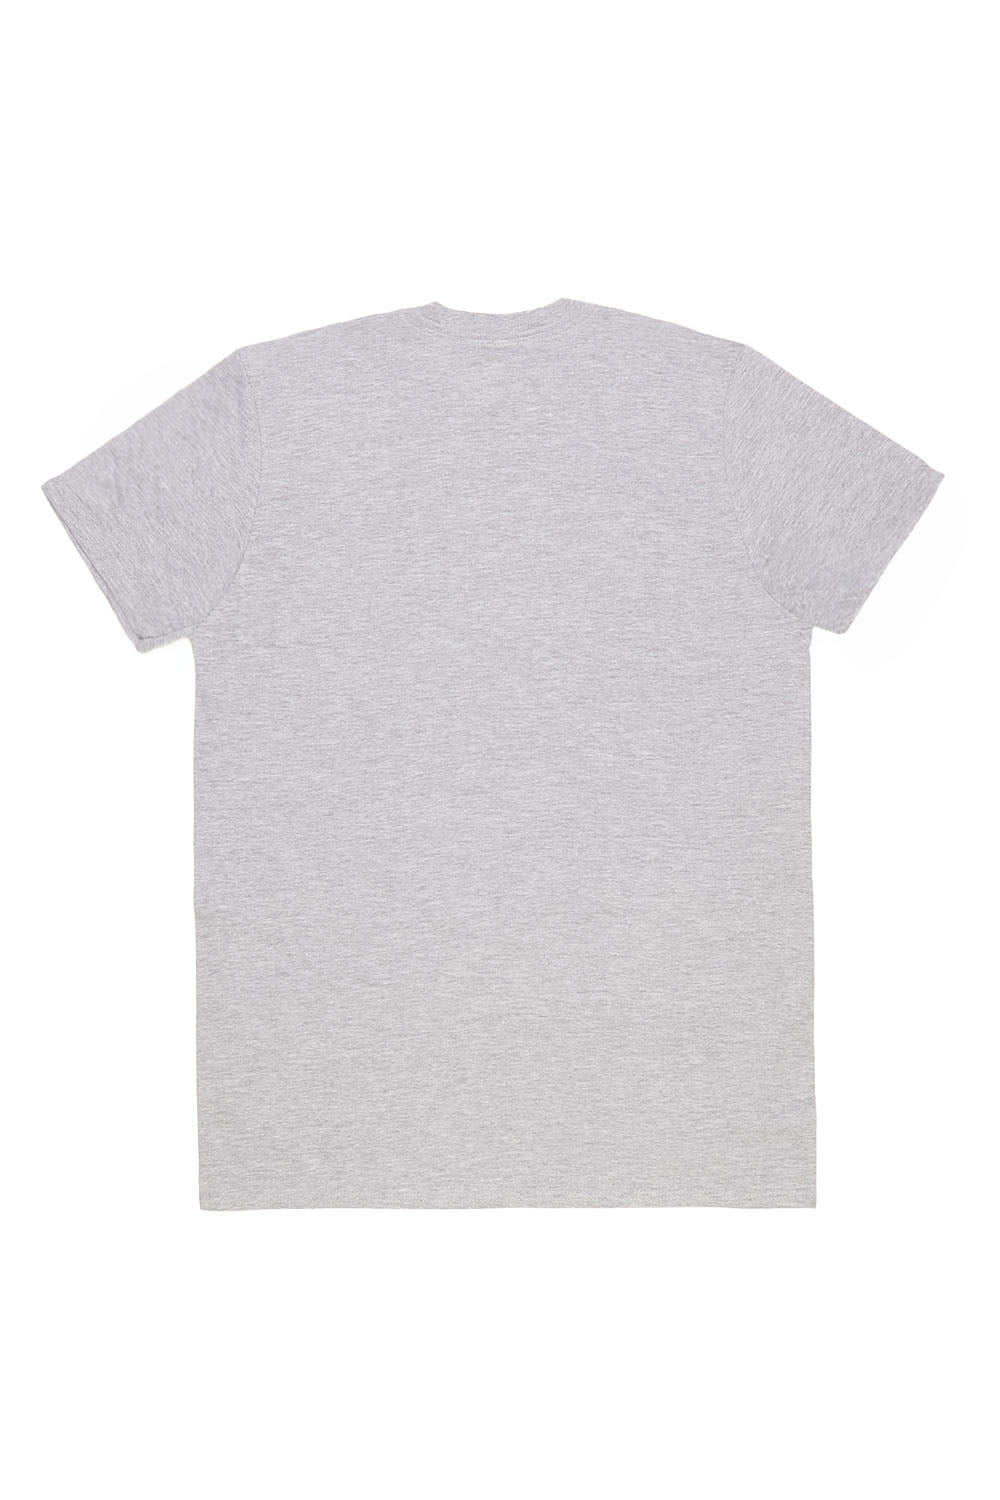 Paris Mon Amour T-Shirt in Ash Grey (Custom Packs)